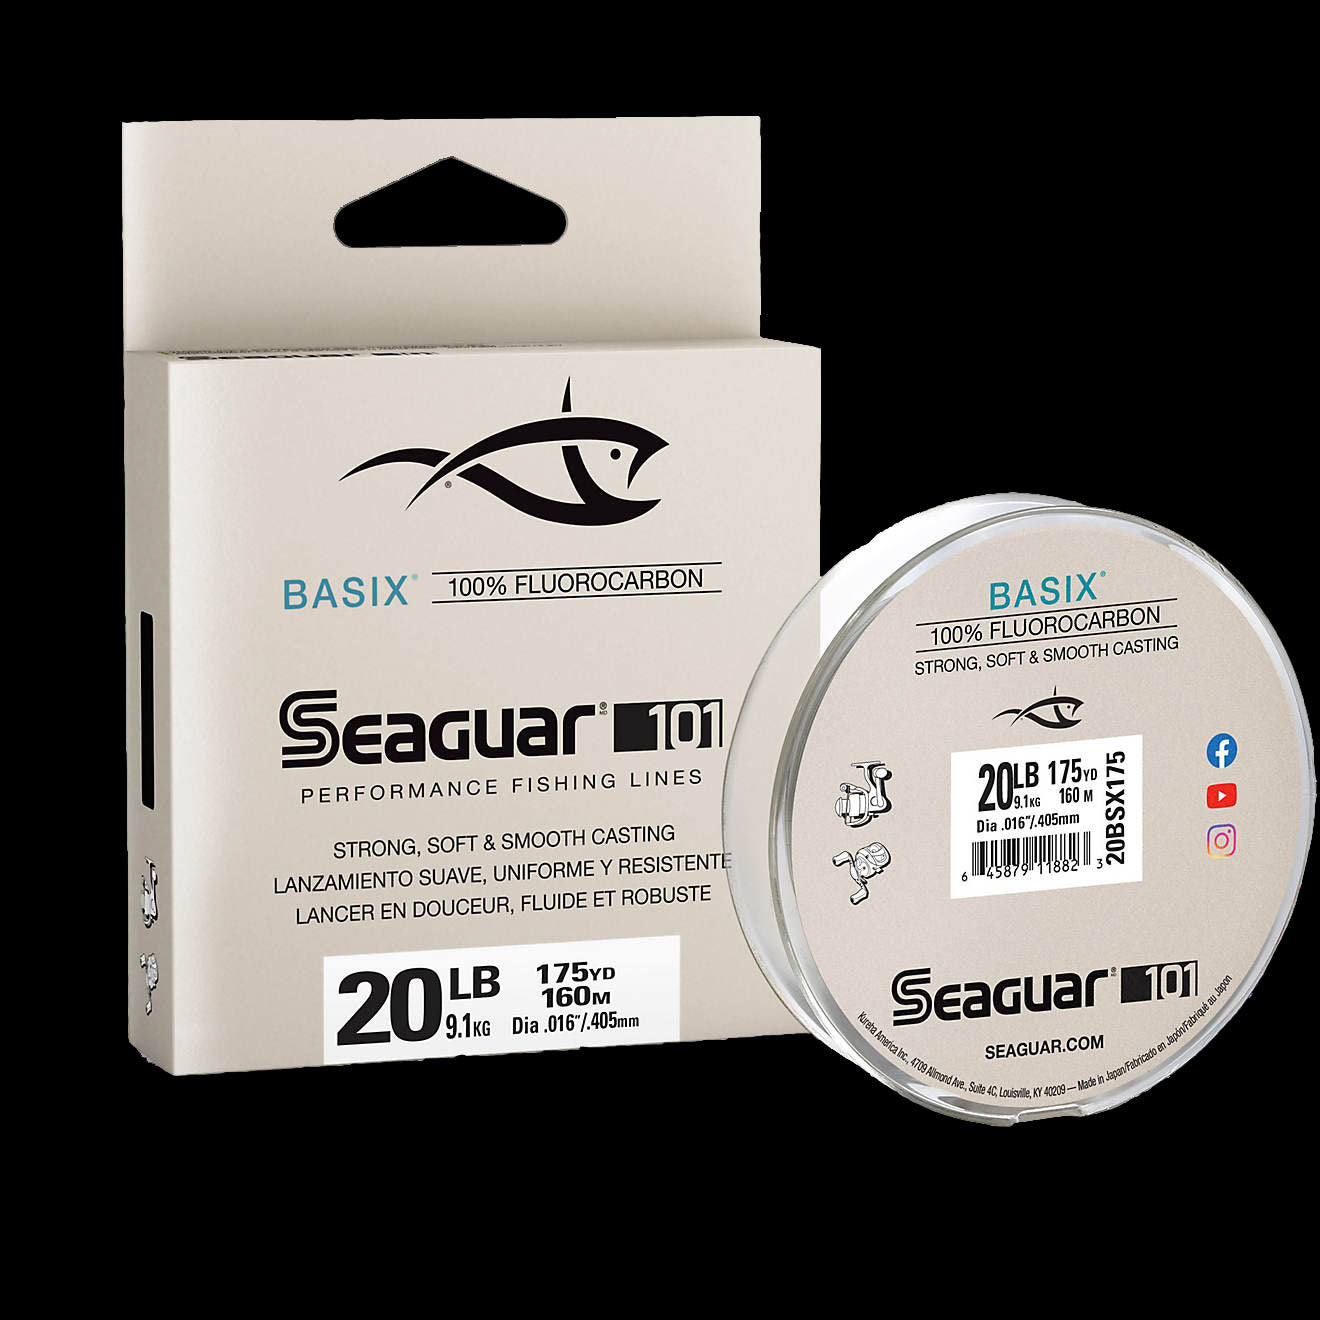 Seaguar Invizx 100% Fluorocarbon Fishing Line,  200 yds,  20lb Test